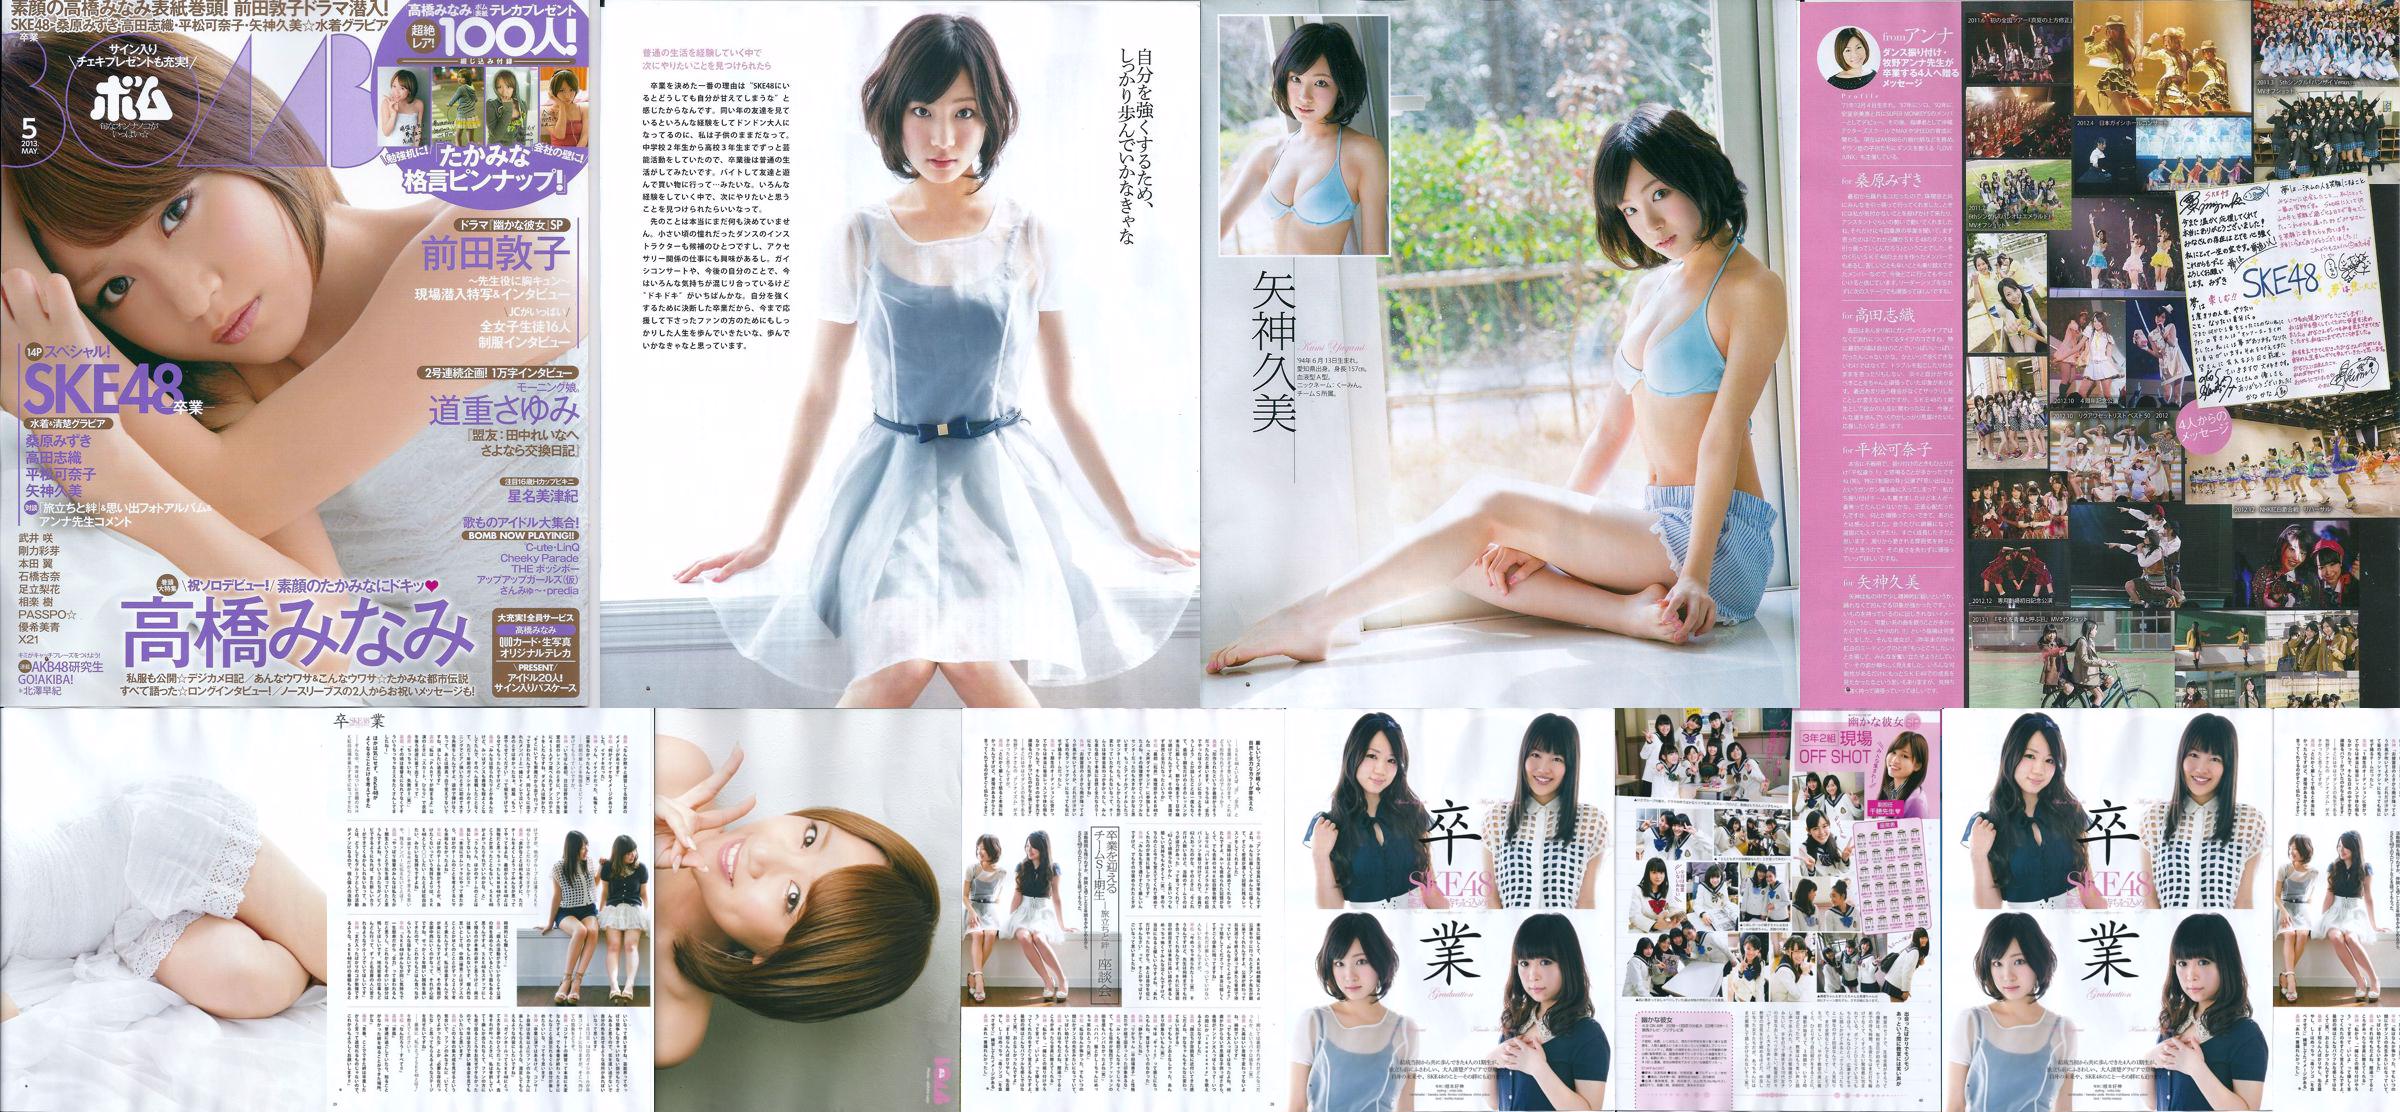 [Bomb Magazine] 2013 No.05 Kumi Yagami Minami Takahashi Atsuko Maeda Photo No.0e1beb Page 2